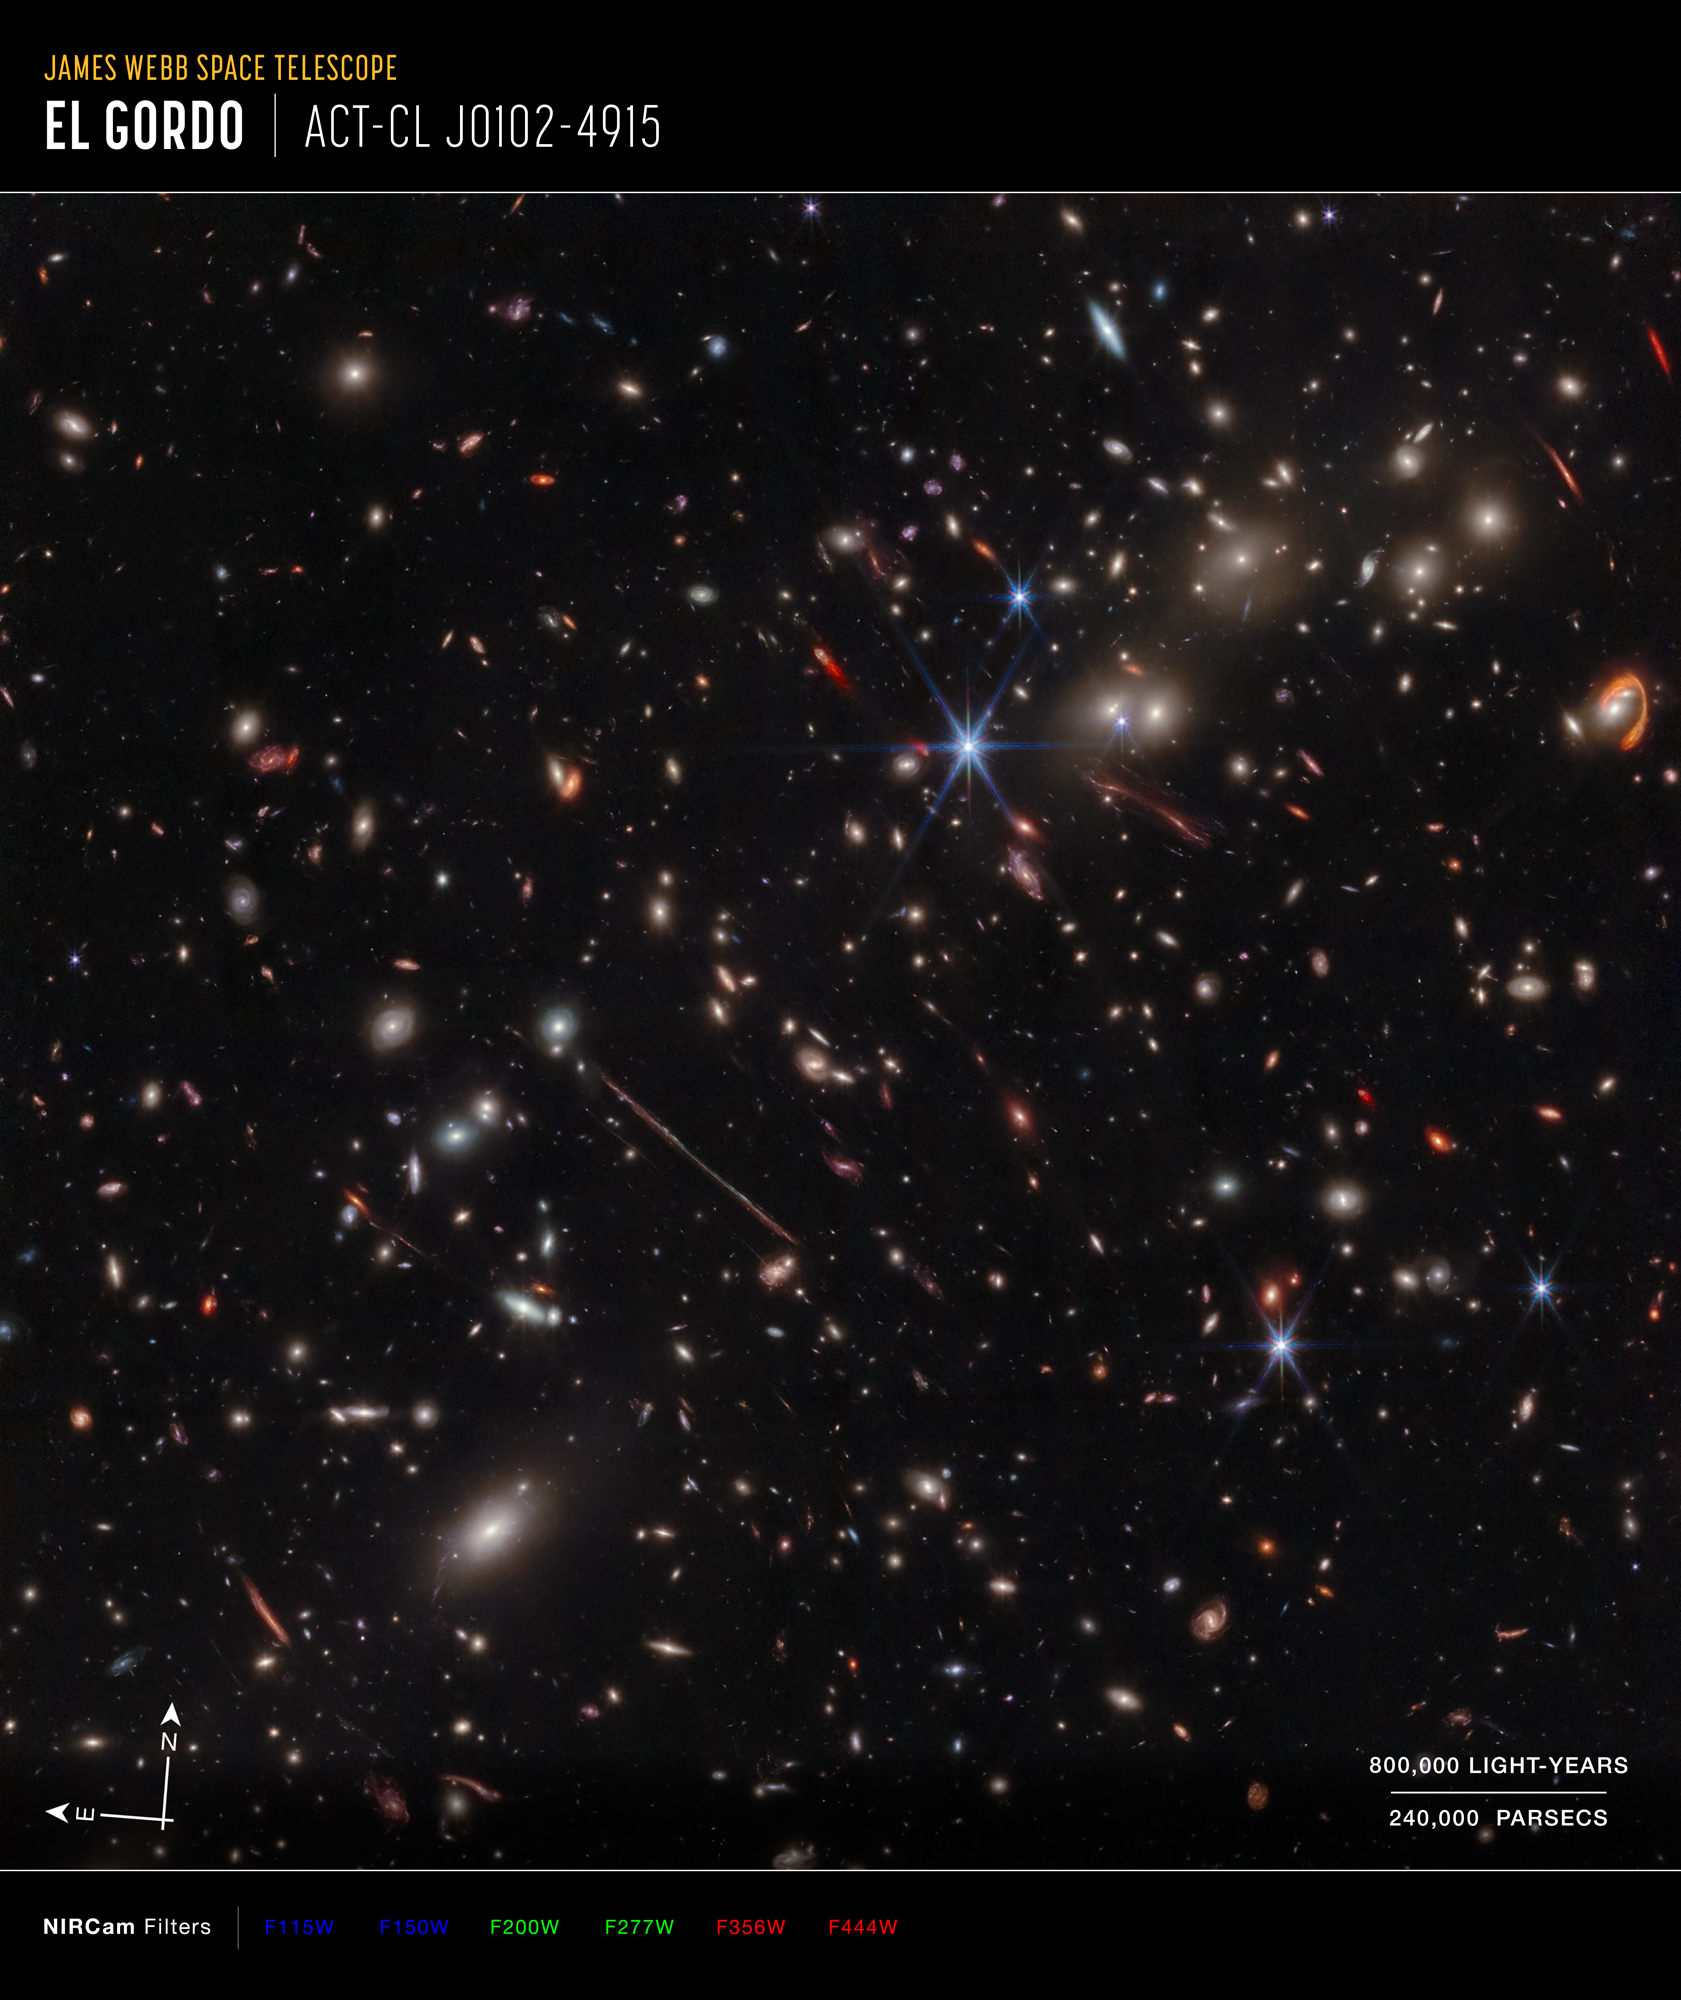 Na ilustracji: Zdjęcie w podczerwieni gromady galaktyk El Gordo („Grubas”) zawierającej setki galaktyk, które zostało zrobione przez Teleskop Webba. El Gordo działa jak soczewka grawitacyjna zniekształcająca i wzmacniająca światło odległych galaktyk tła. Najciekawsze z nich to zniekształcona do kreski galaktyka tła La Flaca („Chuda”) widoczna nieco na lewo od środka zdjęcia oraz El Anzuelo („Haczyk”) widoczna w pobliżu górnego prawego narożnika zdjęcia. Pokazano również strzałki kierunków na niebie N/E (północ/wschód), skalę wielkości w latach świetlnych/parsekach oraz oznaczenia kolorów (niebieski – filtry o długościach fali λ=1,15 i 1,50 μm, zielony – filtry λ=2,00 i 2,77 μm, czerwony – filtry λ=3,56 i 4,44 μm). Źródło: NASA, ESA, CSA